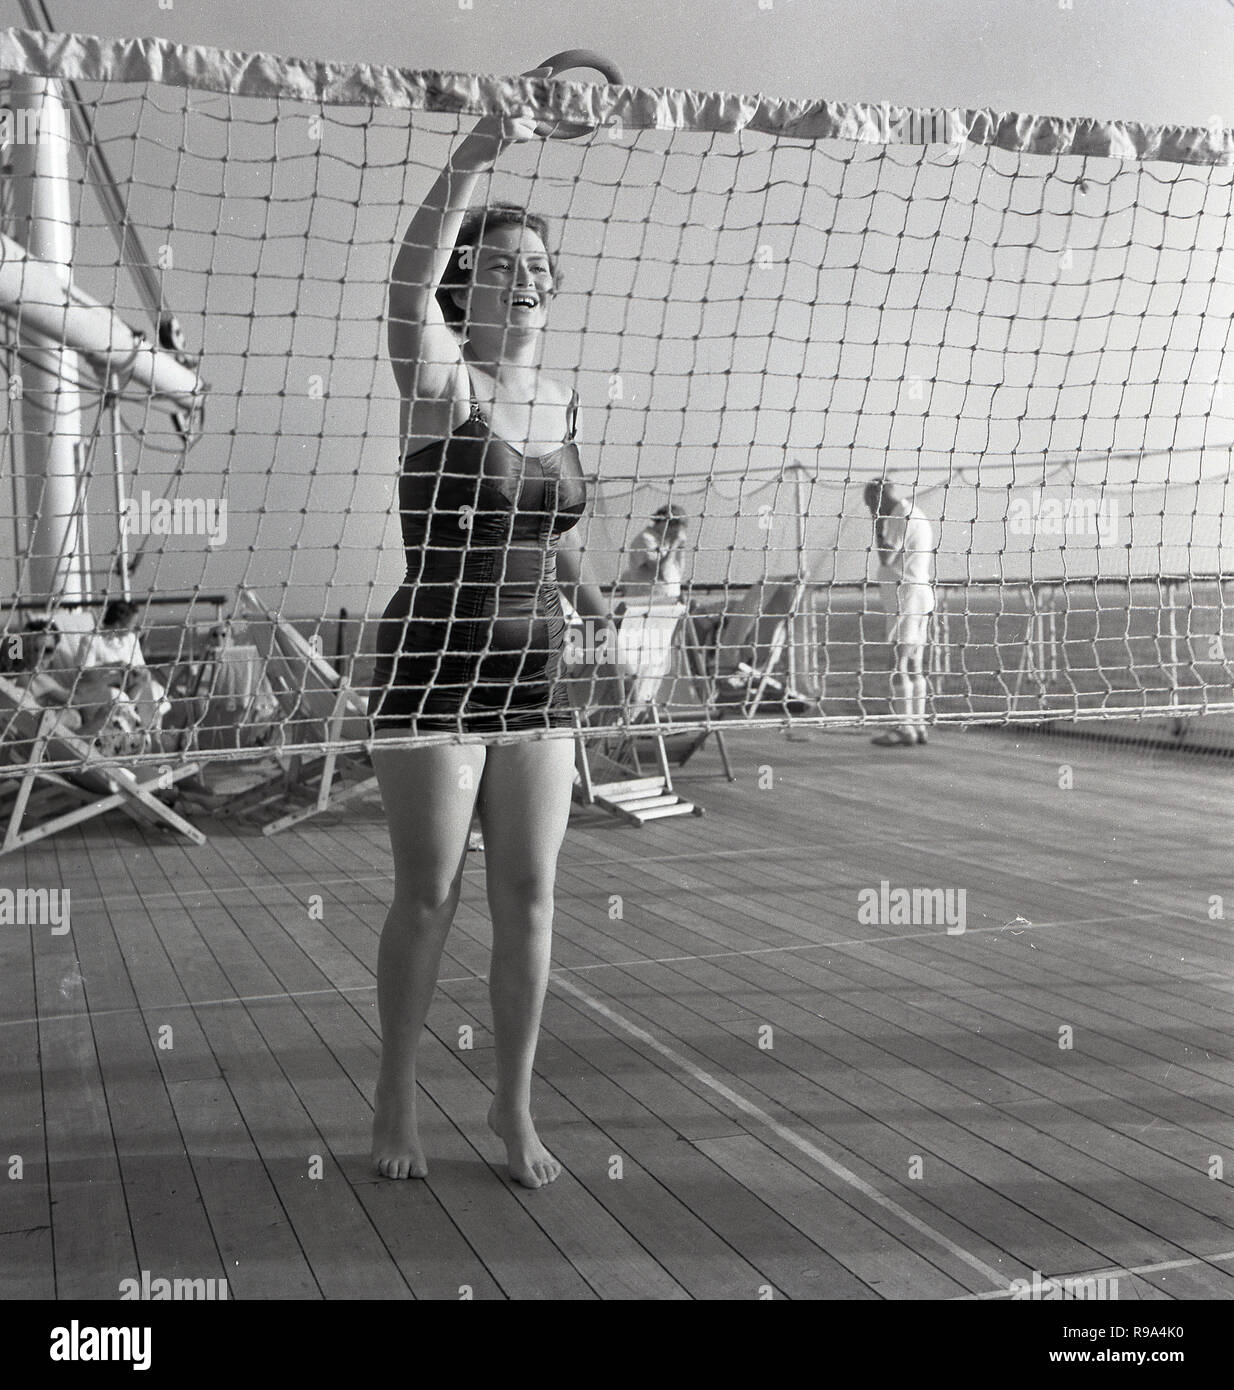 Années 1950, historique, à bord de l'Union européenne-castle steamship 'Kenya', une dame passager dans son maillot à l'extérieur sur la terrasse en bois du navire jouant un jeu de jeter par le net. Banque D'Images